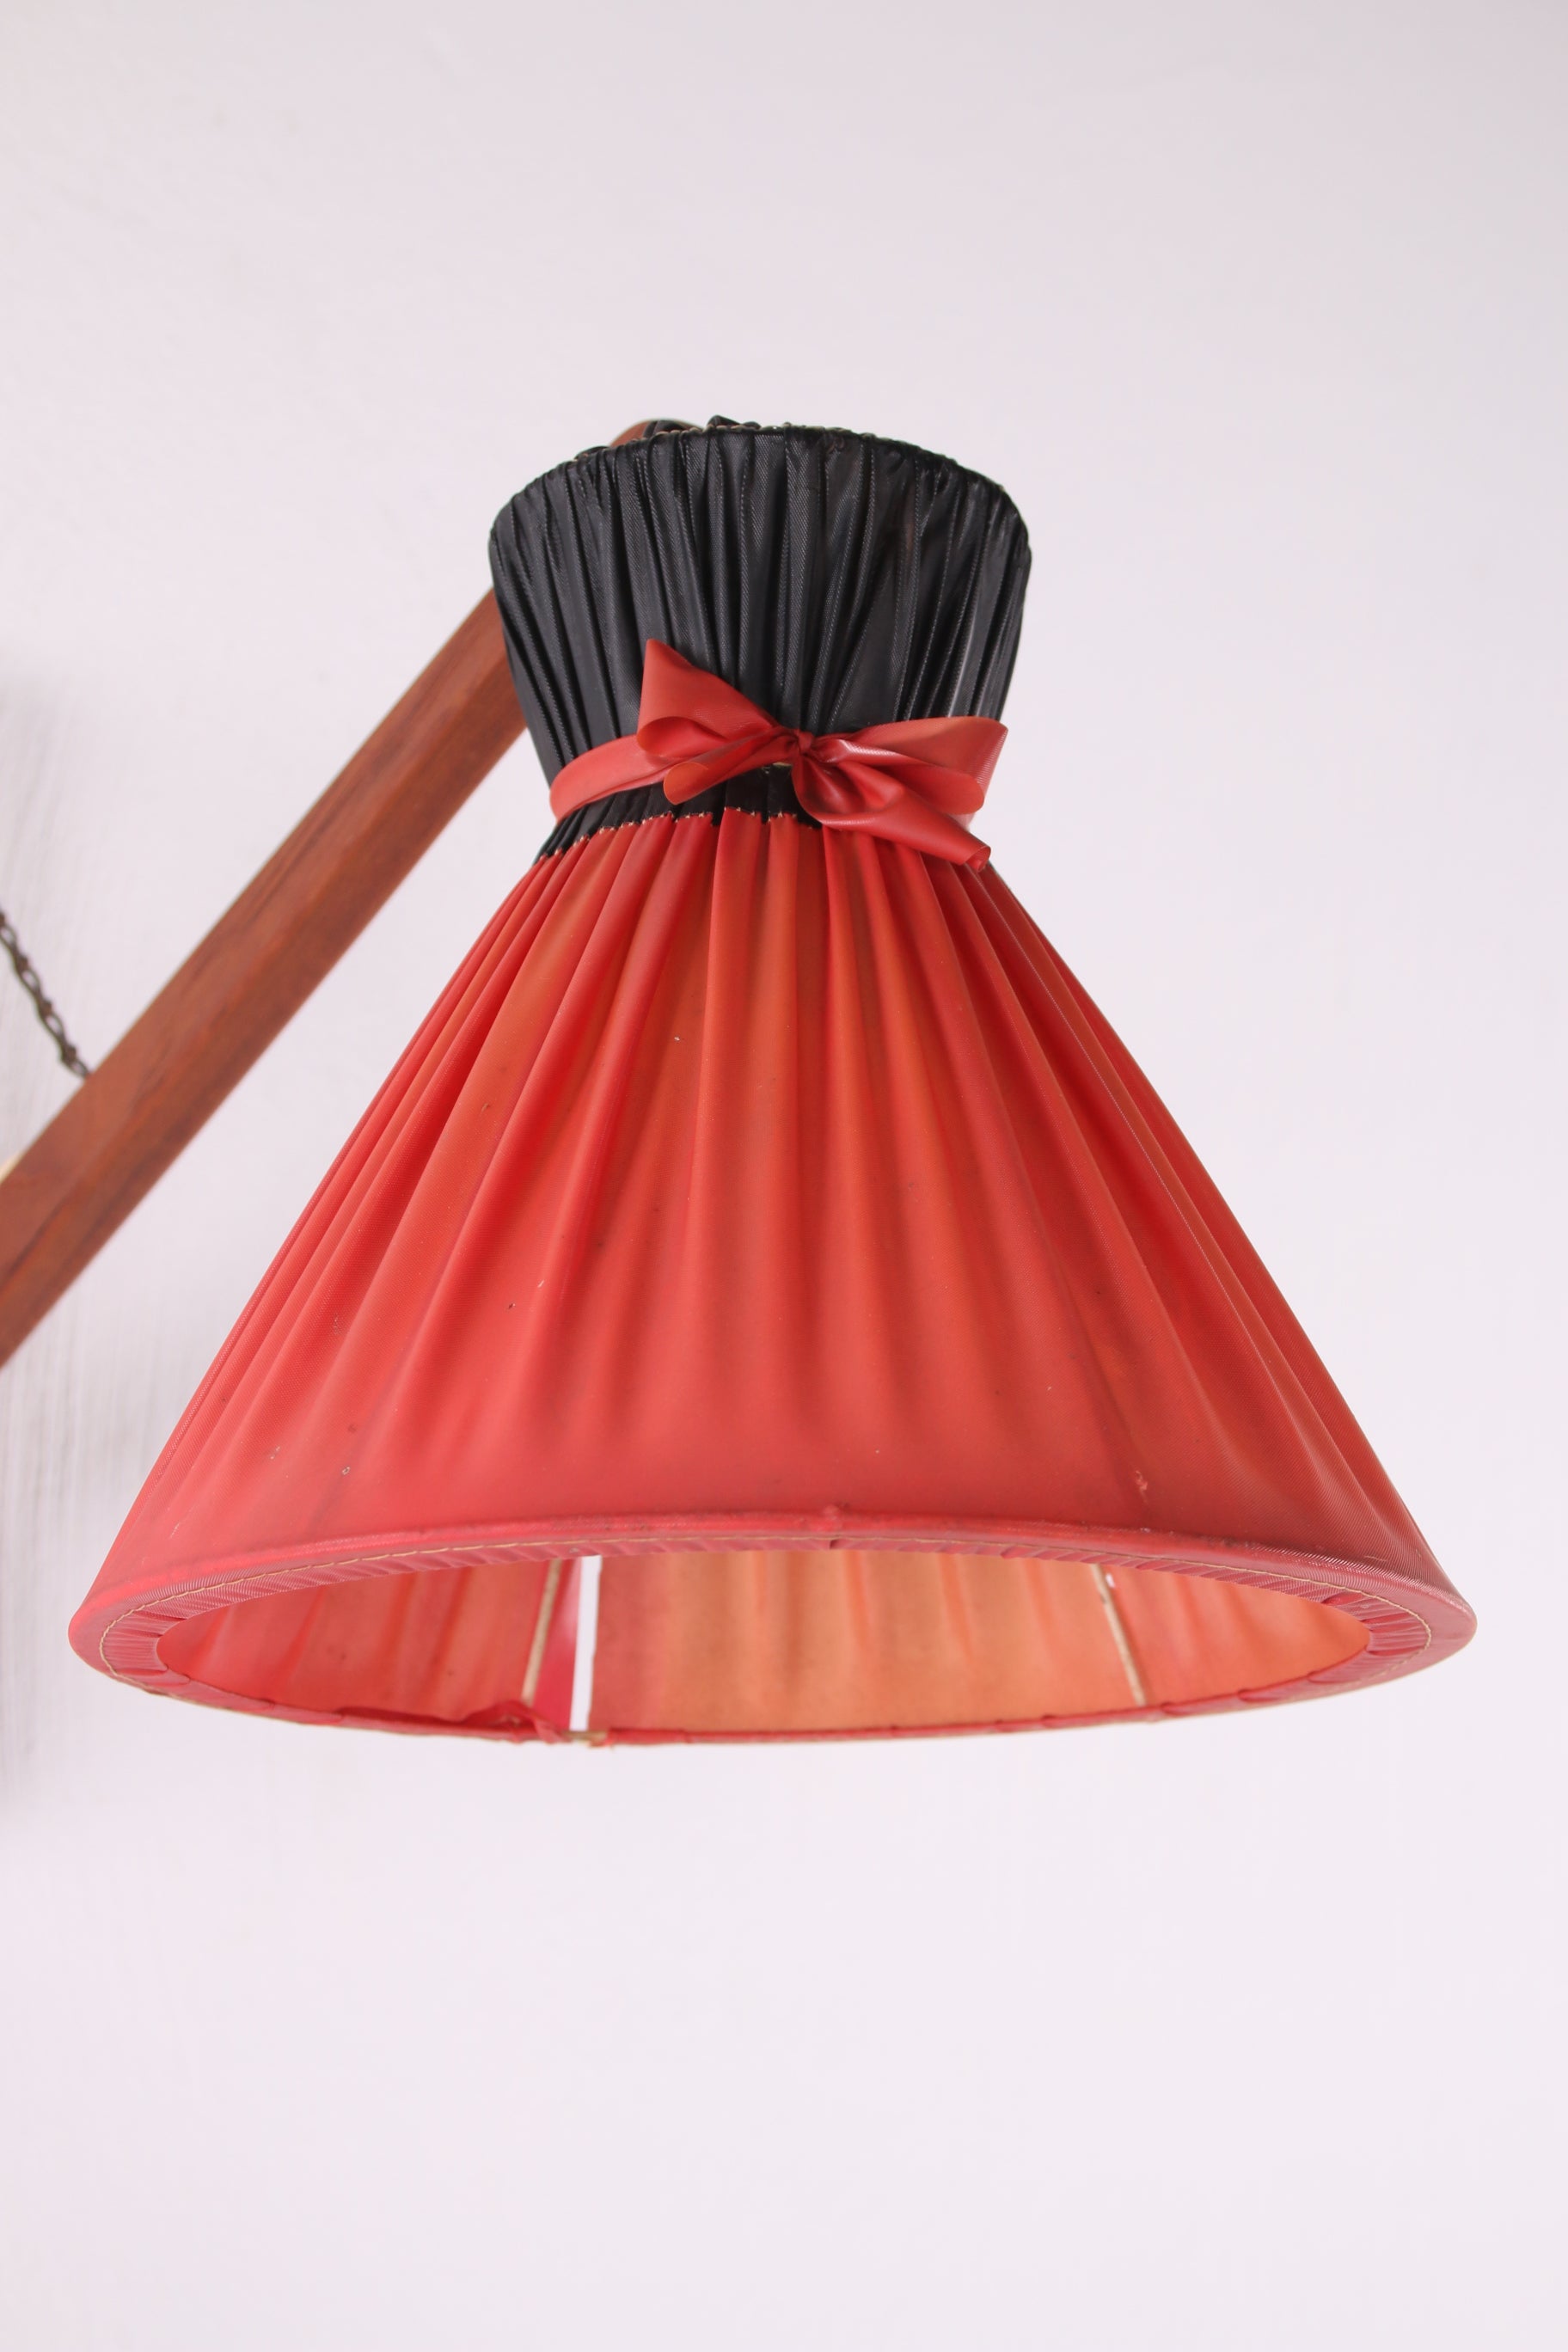 Deens Design Wandlampje met orginelen kap jaren60 zijkant